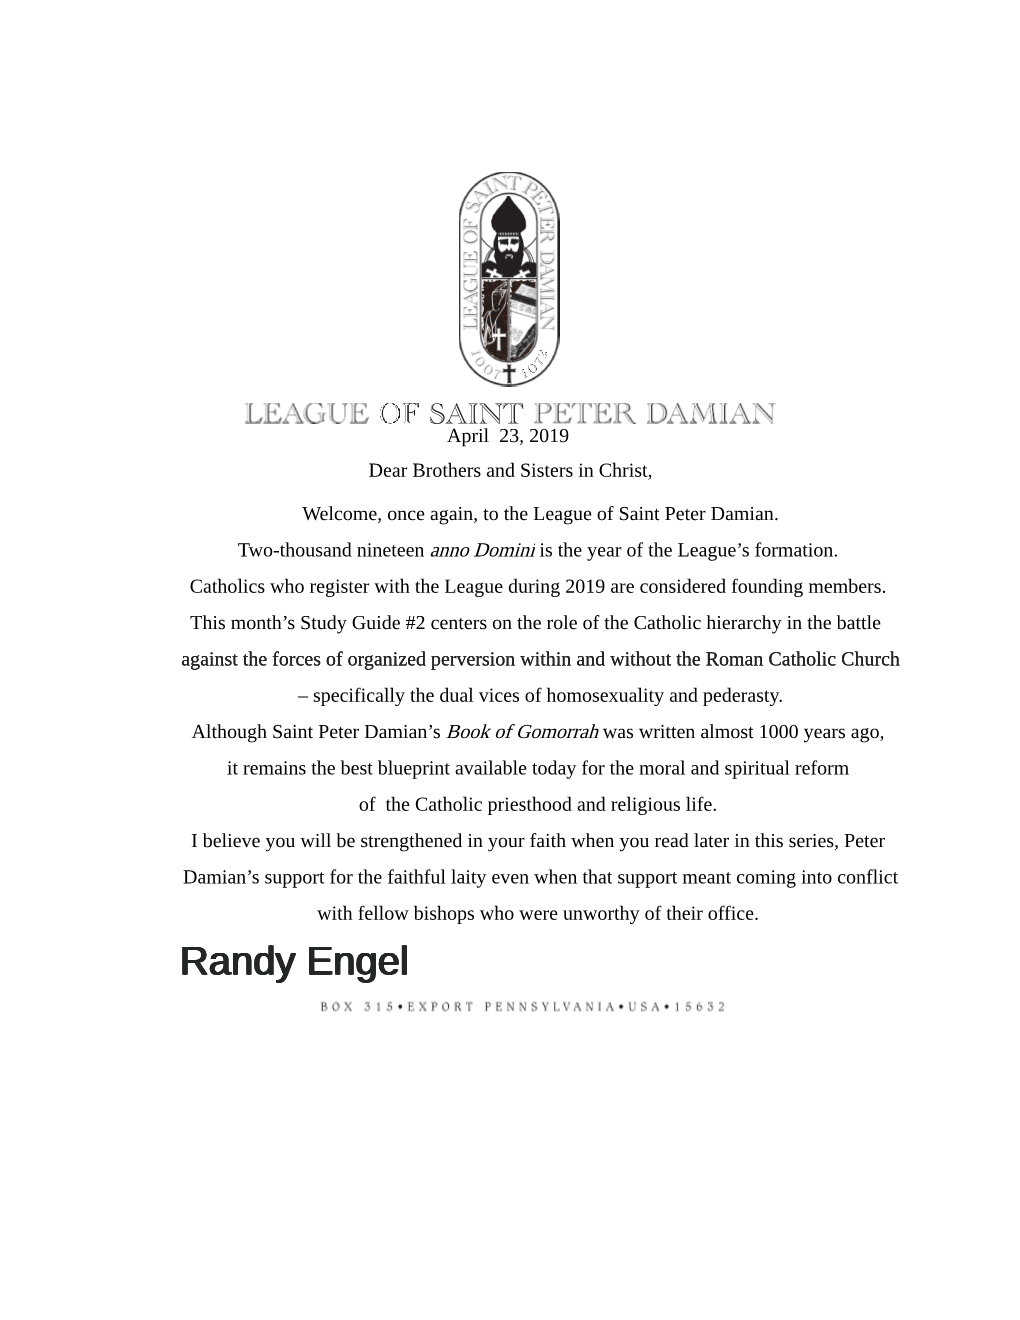 League of Saint Peter Damian Mailing #2 April 2019